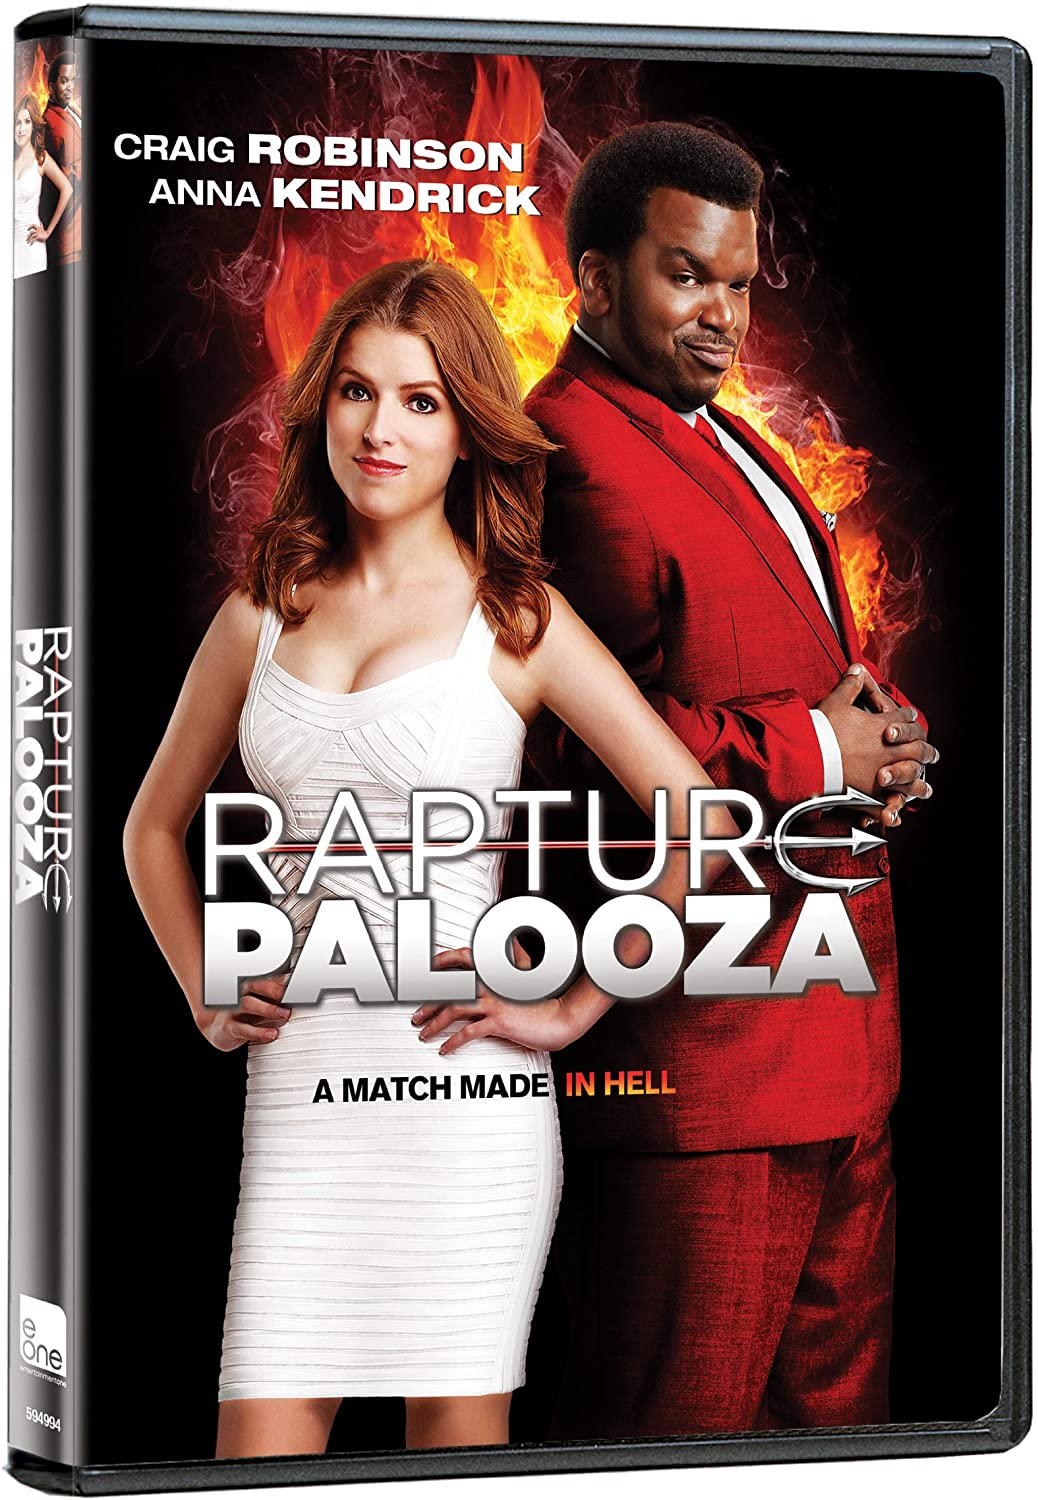 Rapture Palooza [DVD]